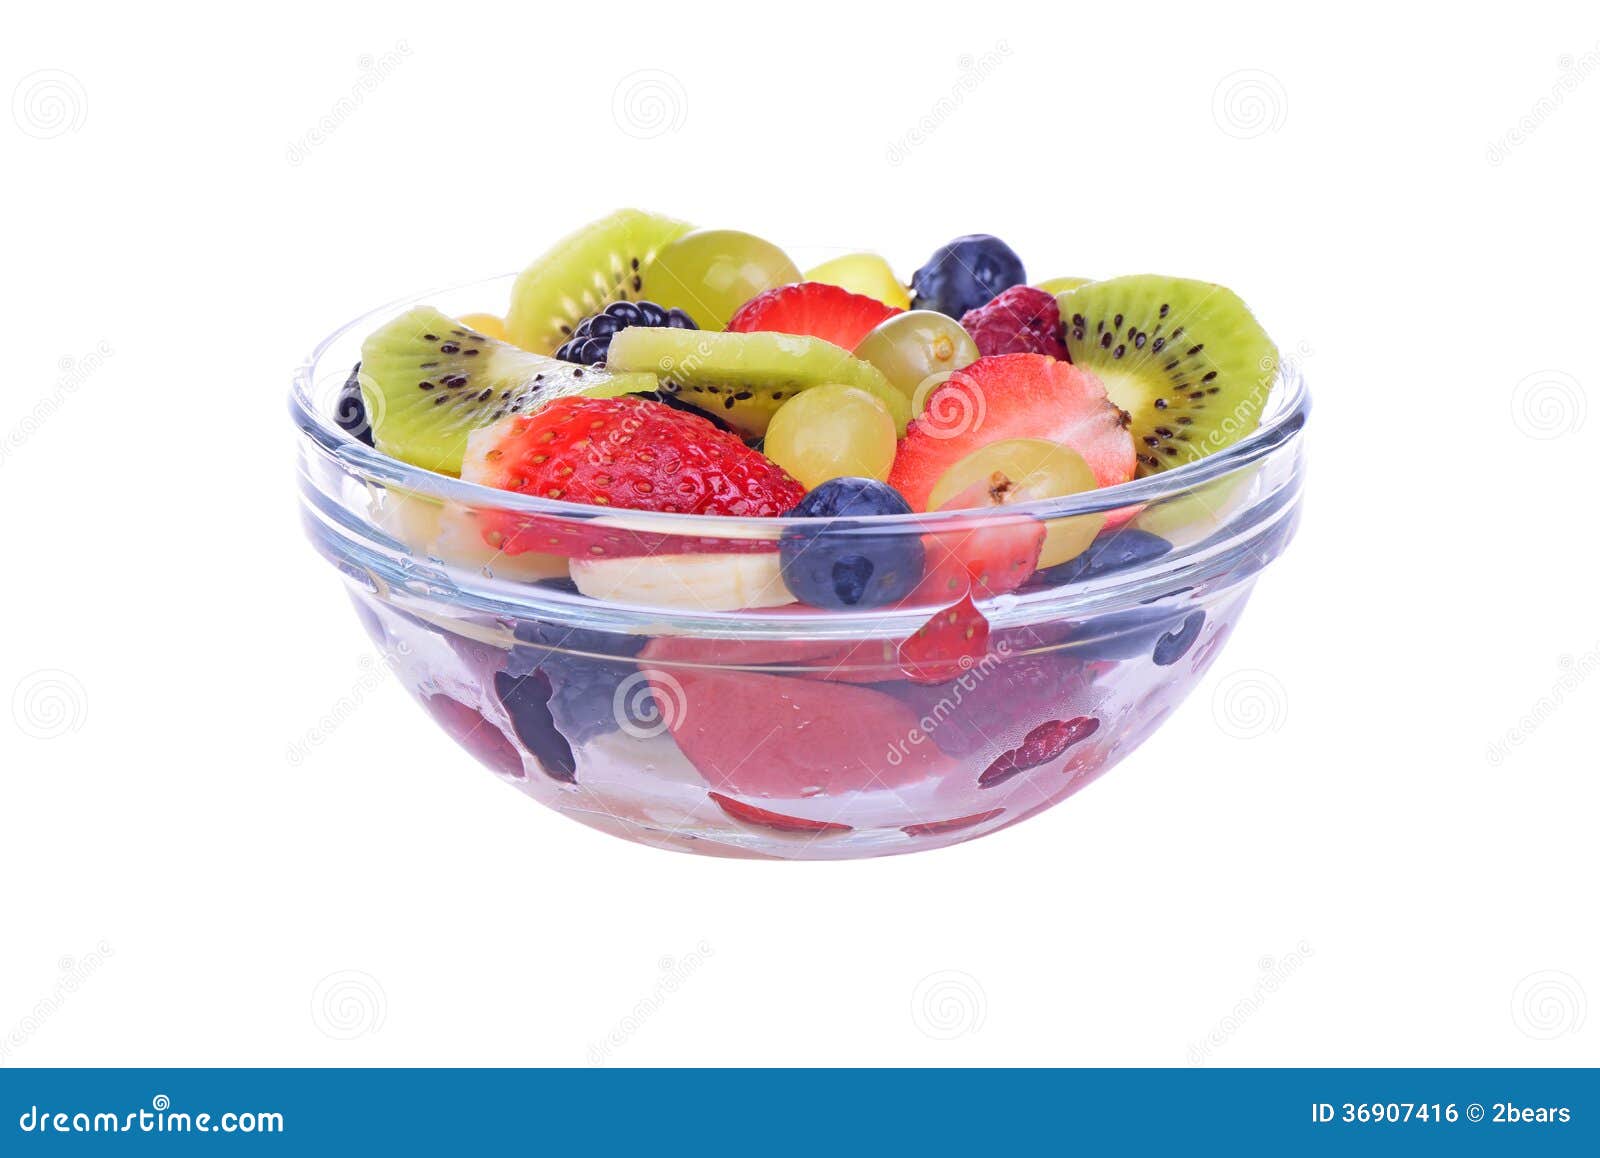 水果沙拉用草莓，桔子，猕猴桃. 水果沙拉用草莓、在白色背景和蓝莓隔绝的桔子、猕猴桃